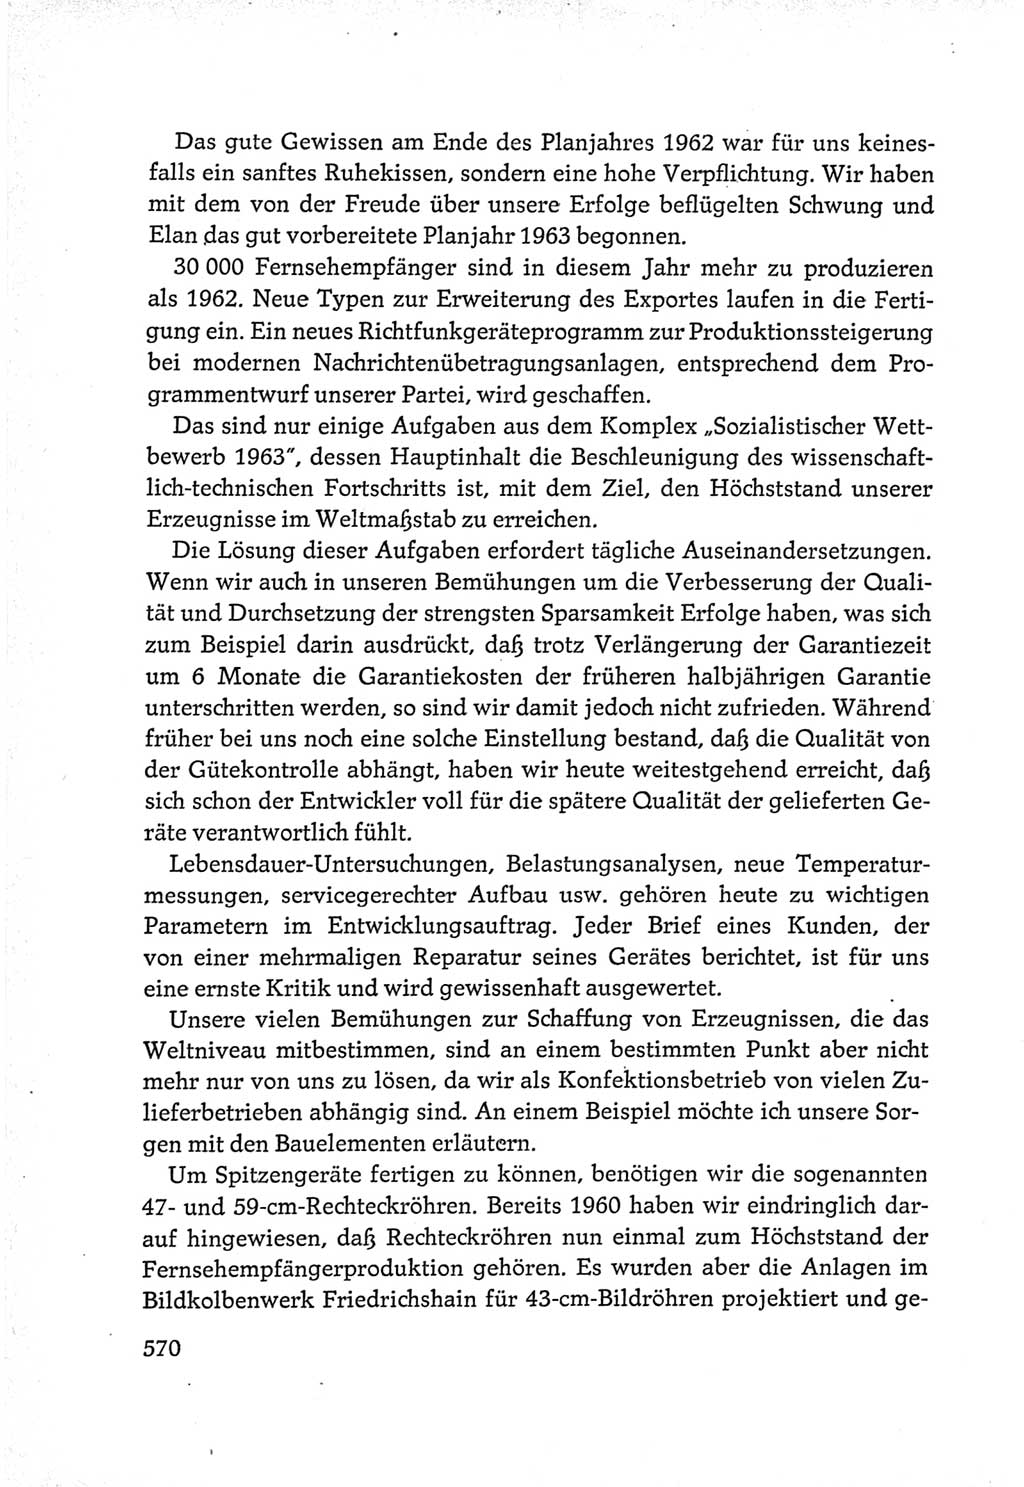 Protokoll der Verhandlungen des Ⅵ. Parteitages der Sozialistischen Einheitspartei Deutschlands (SED) [Deutsche Demokratische Republik (DDR)] 1963, Band Ⅲ, Seite 570 (Prot. Verh. Ⅵ. PT SED DDR 1963, Bd. Ⅲ, S. 570)